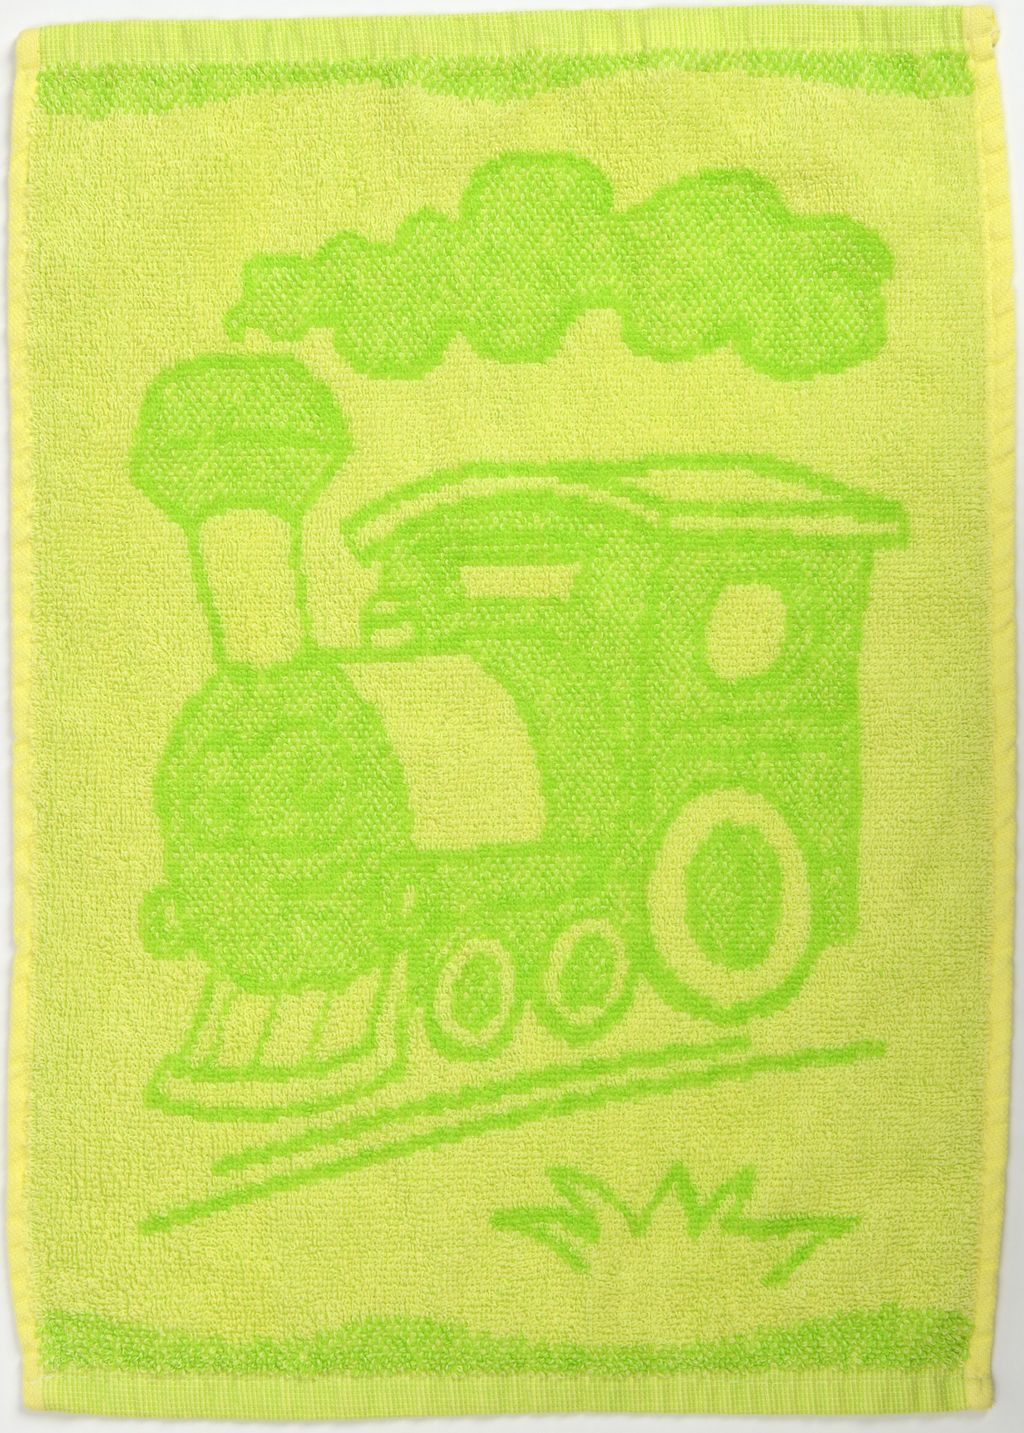 Dětský ručník BEBÉ mašinka zelený 30x50 cm - Výprodej Povlečení